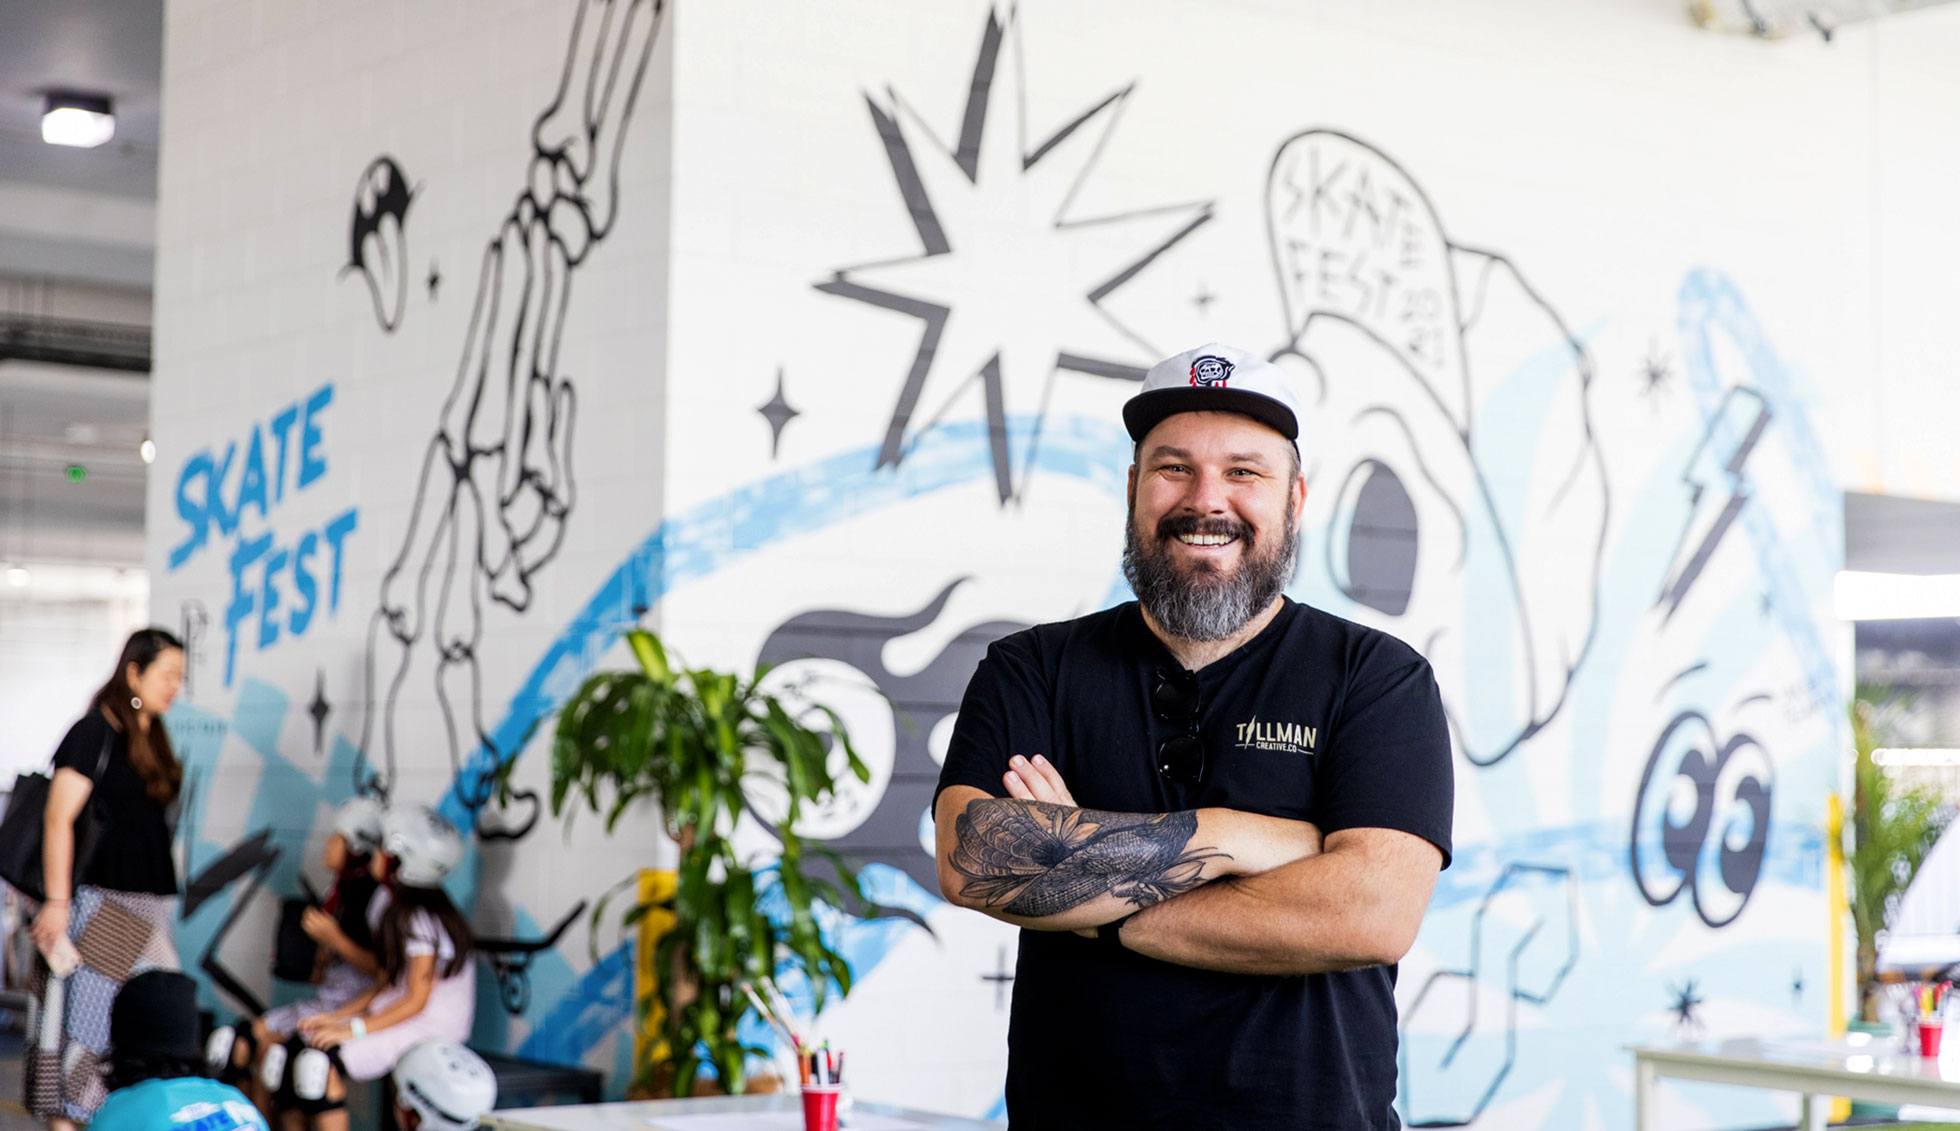 Mural artist Kiel Tillman stands smiling infront of his finished mural piece for Skatefest